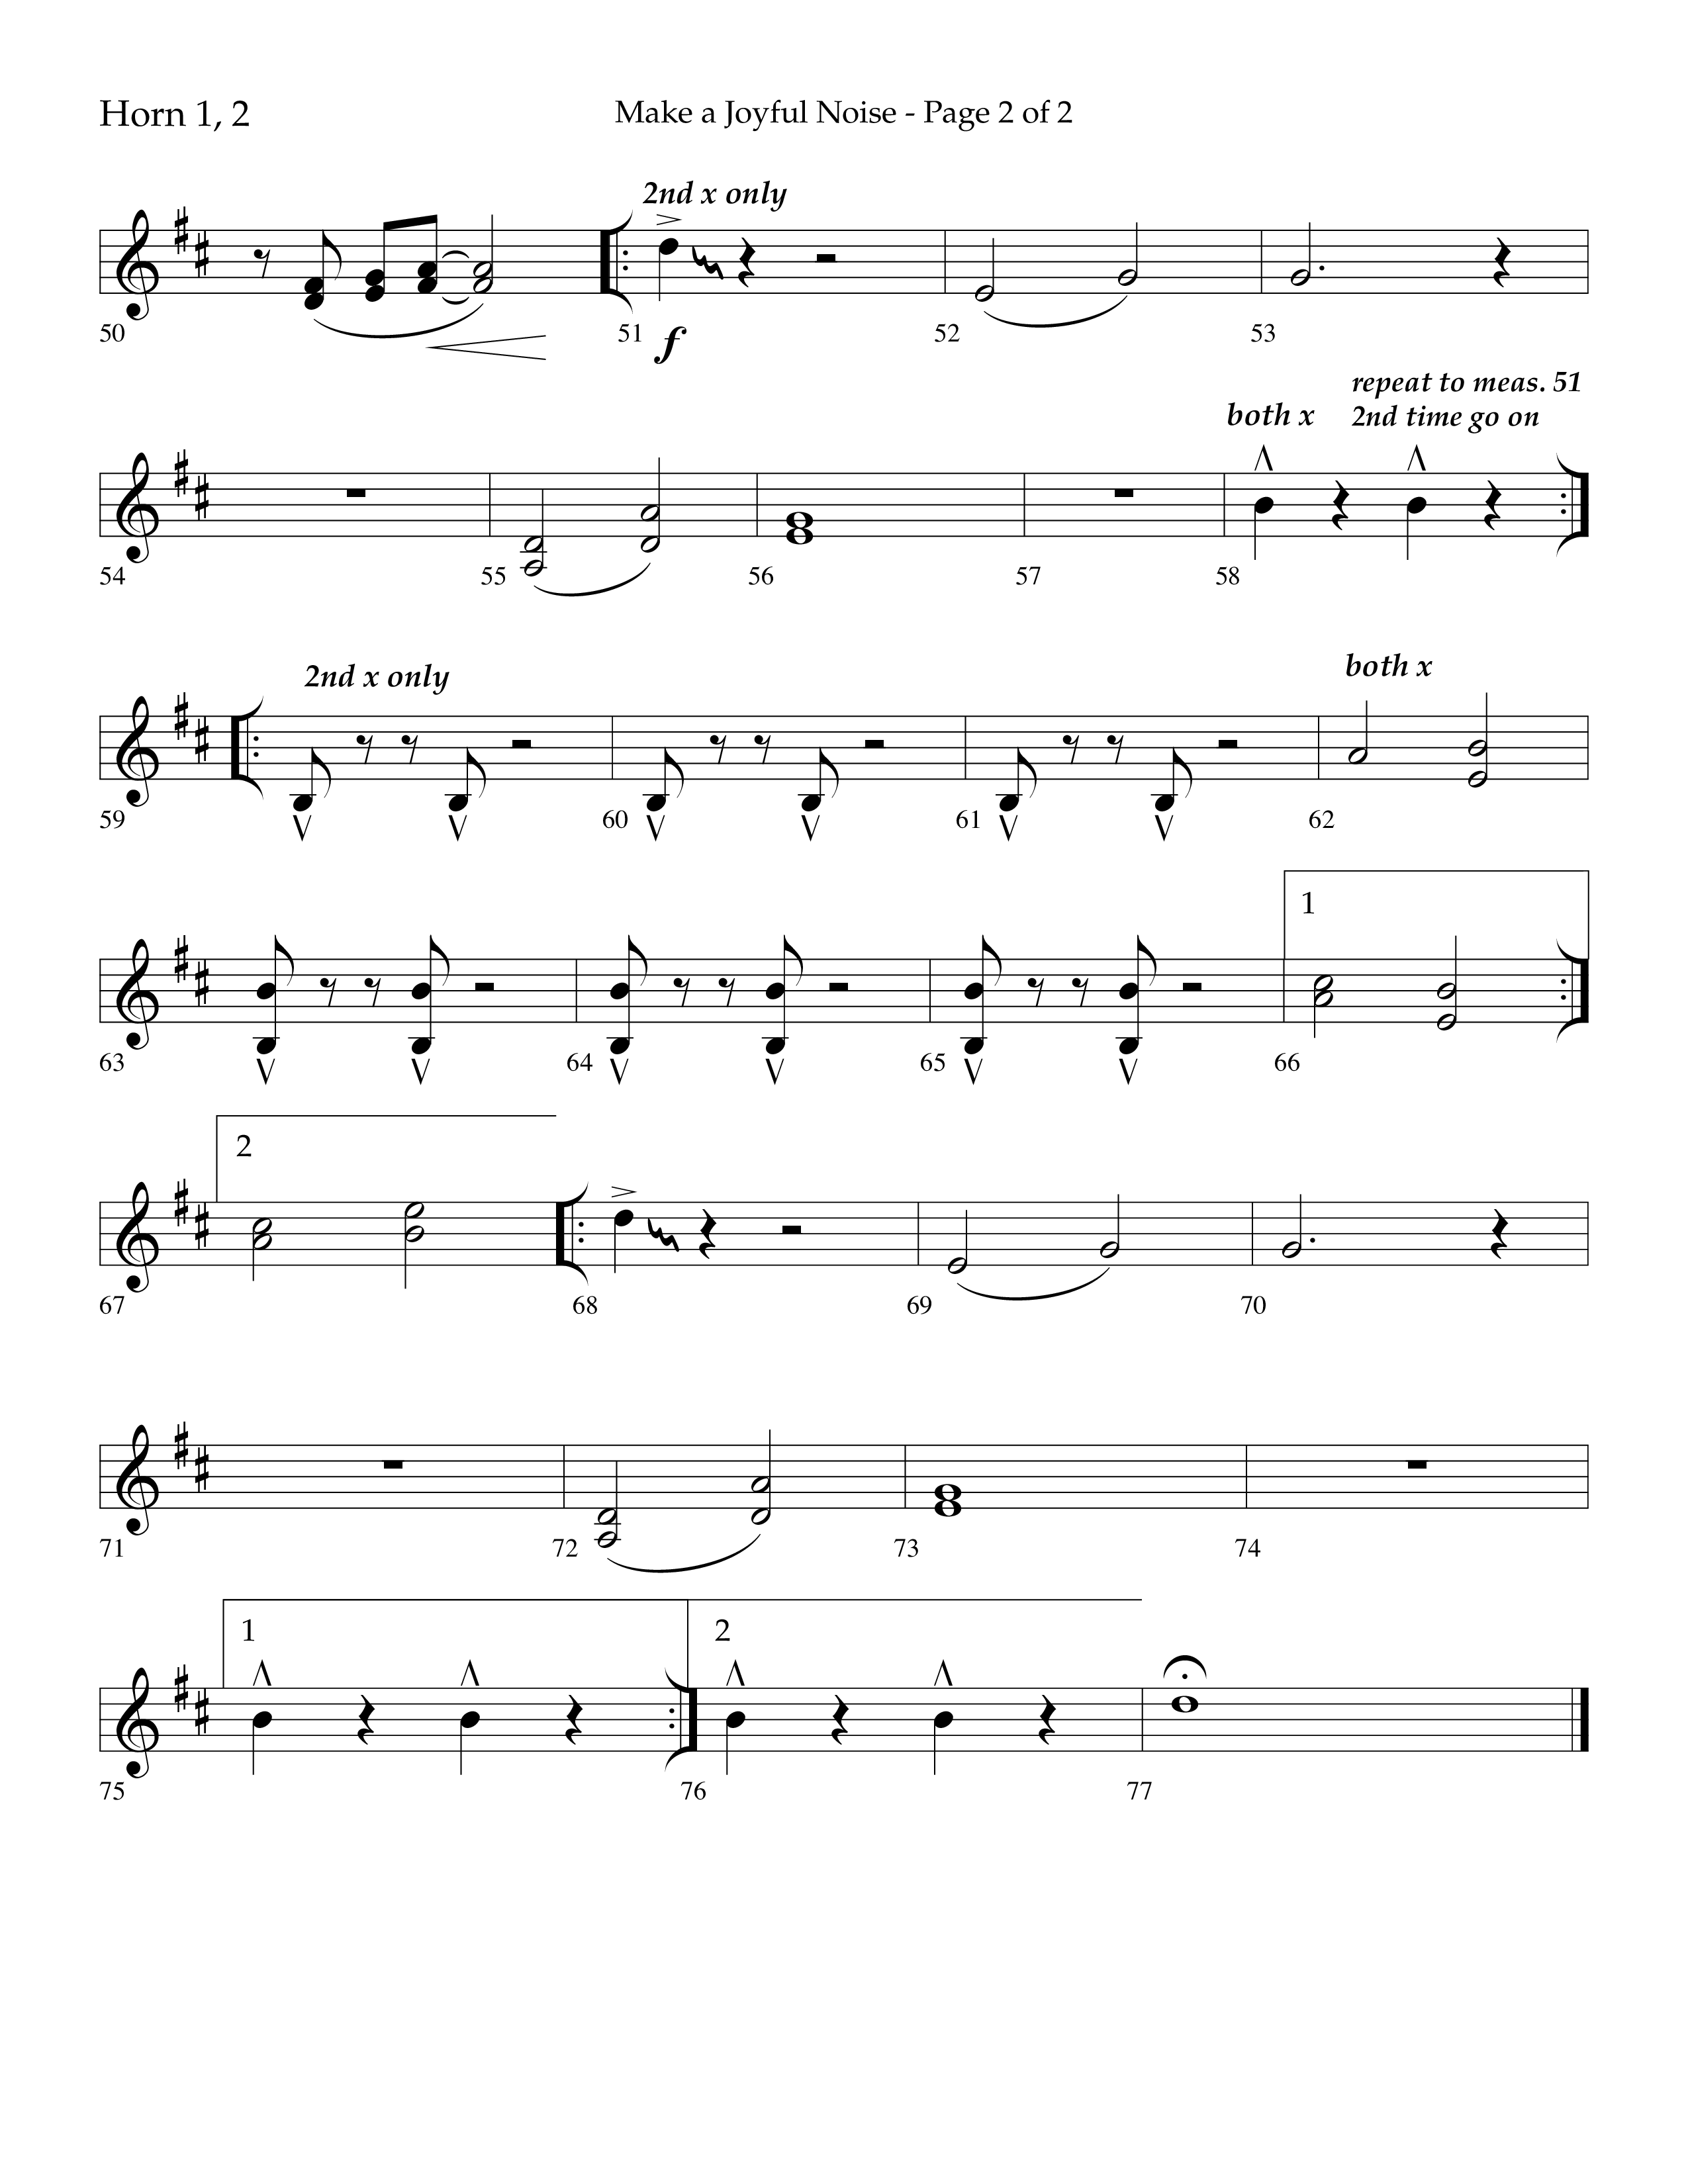 Make A Joyful Noise (Choral Anthem SATB) French Horn 1/2 (Lifeway Choral / Arr. David Wise / Orch. Daniel Semsen)